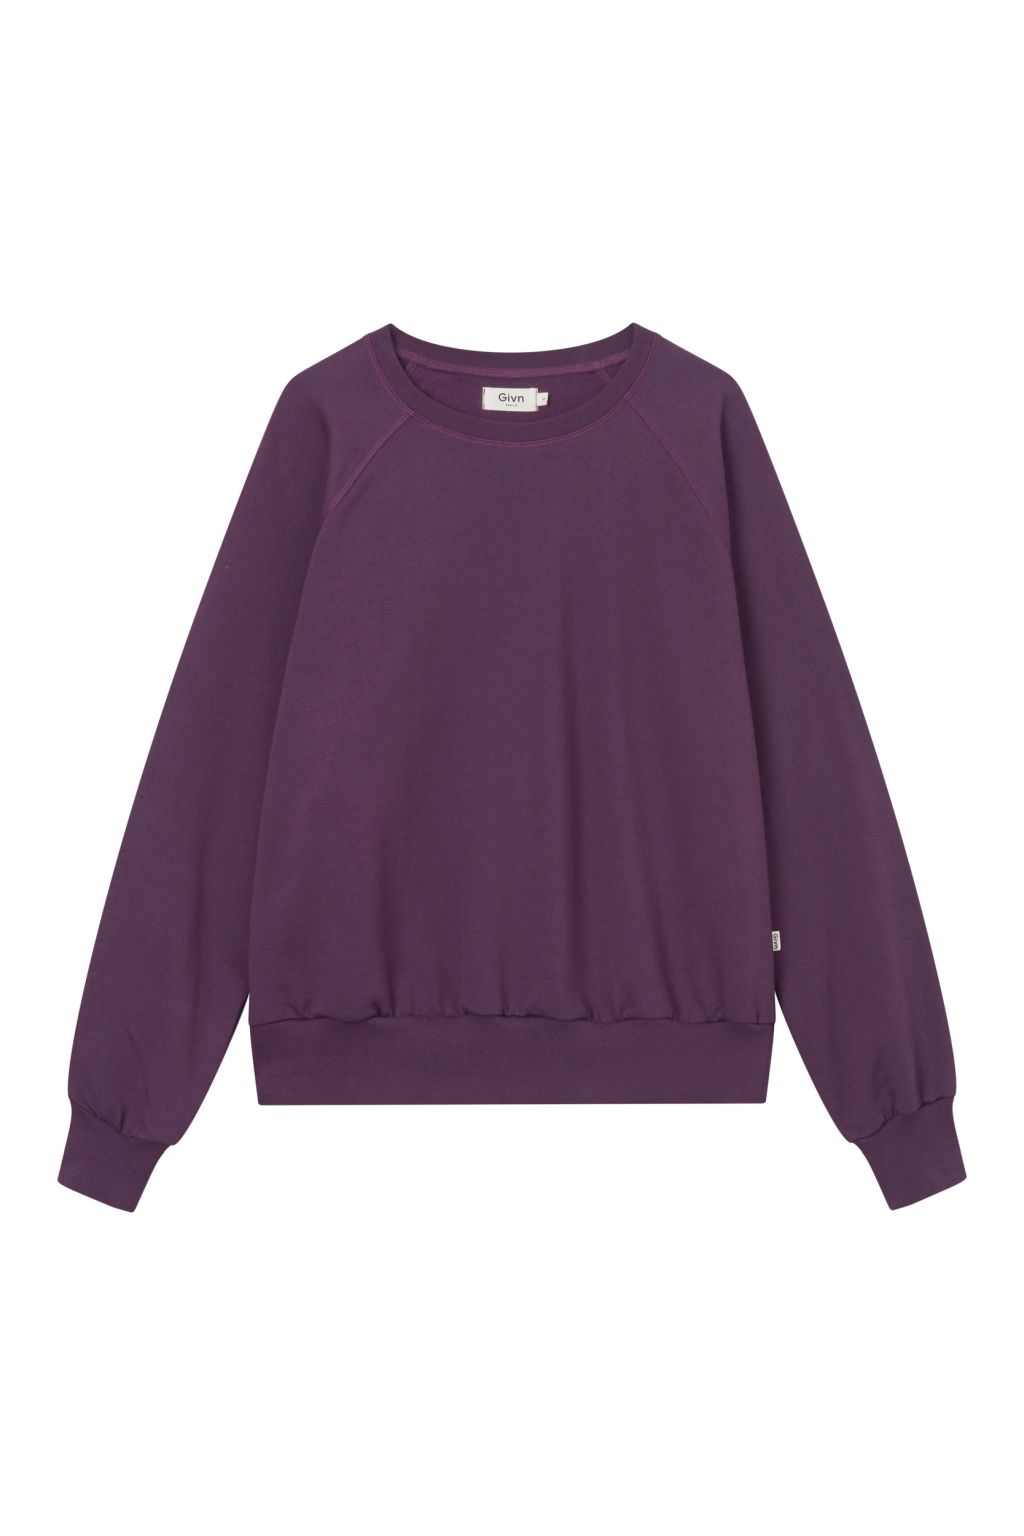 Dede - Sweater - Bio-Baumwolle Dark Purple XL